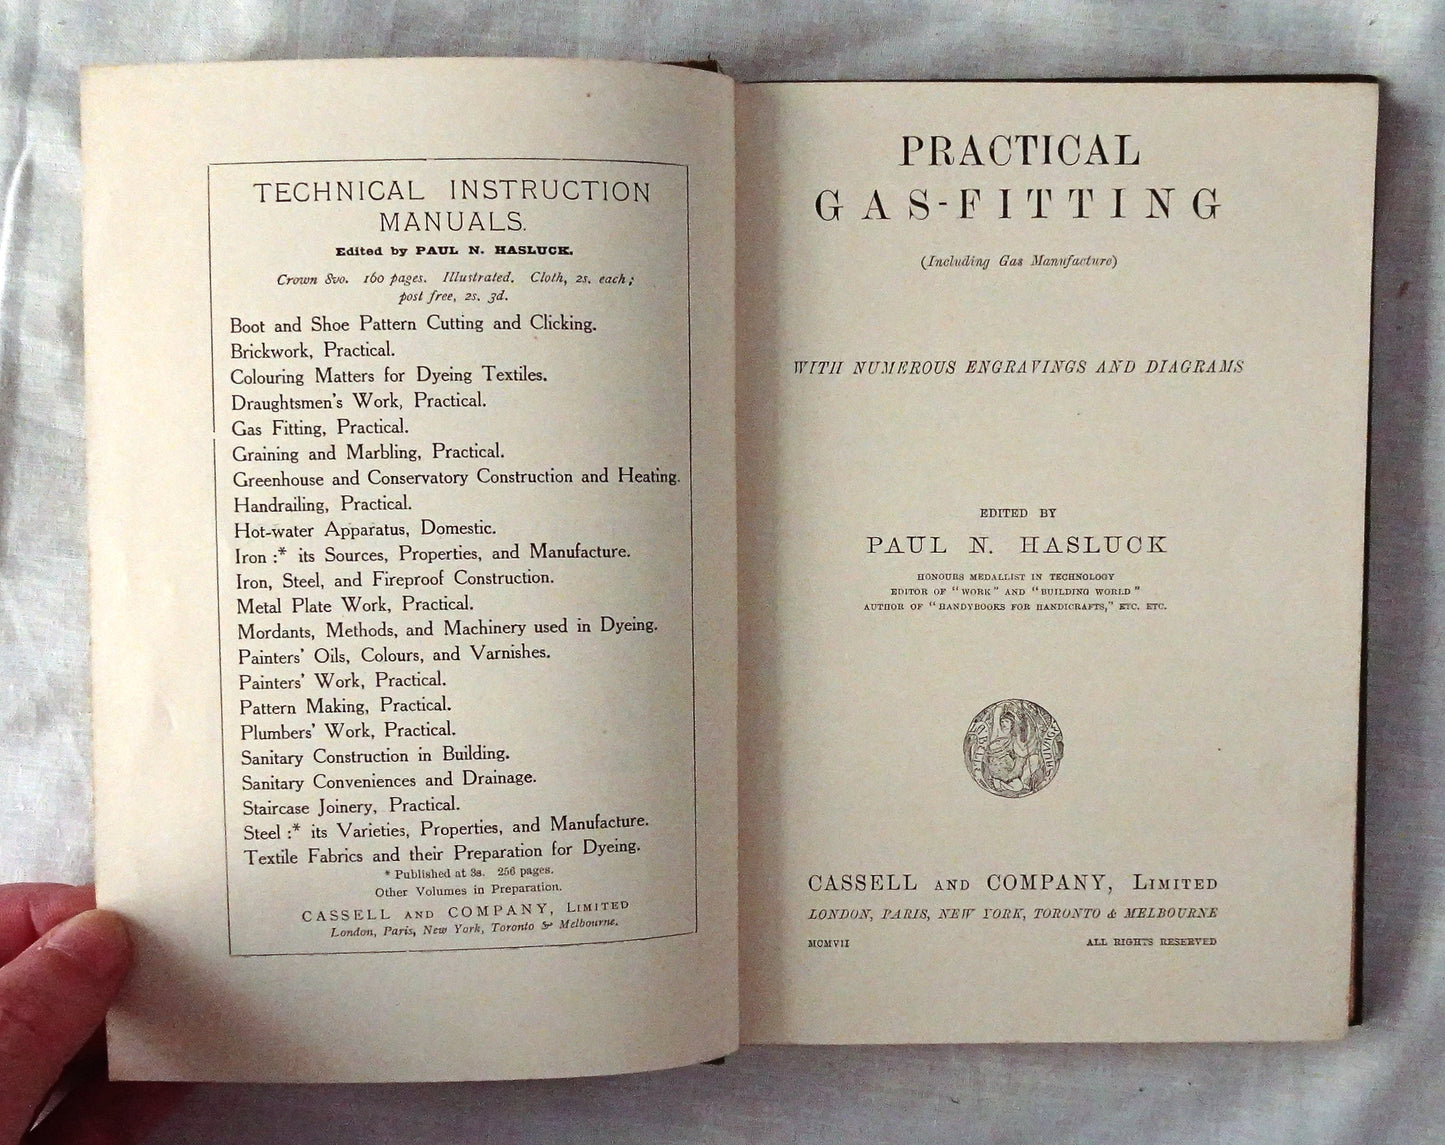 Practical Gas-Fitting by Paul N. Hasluck